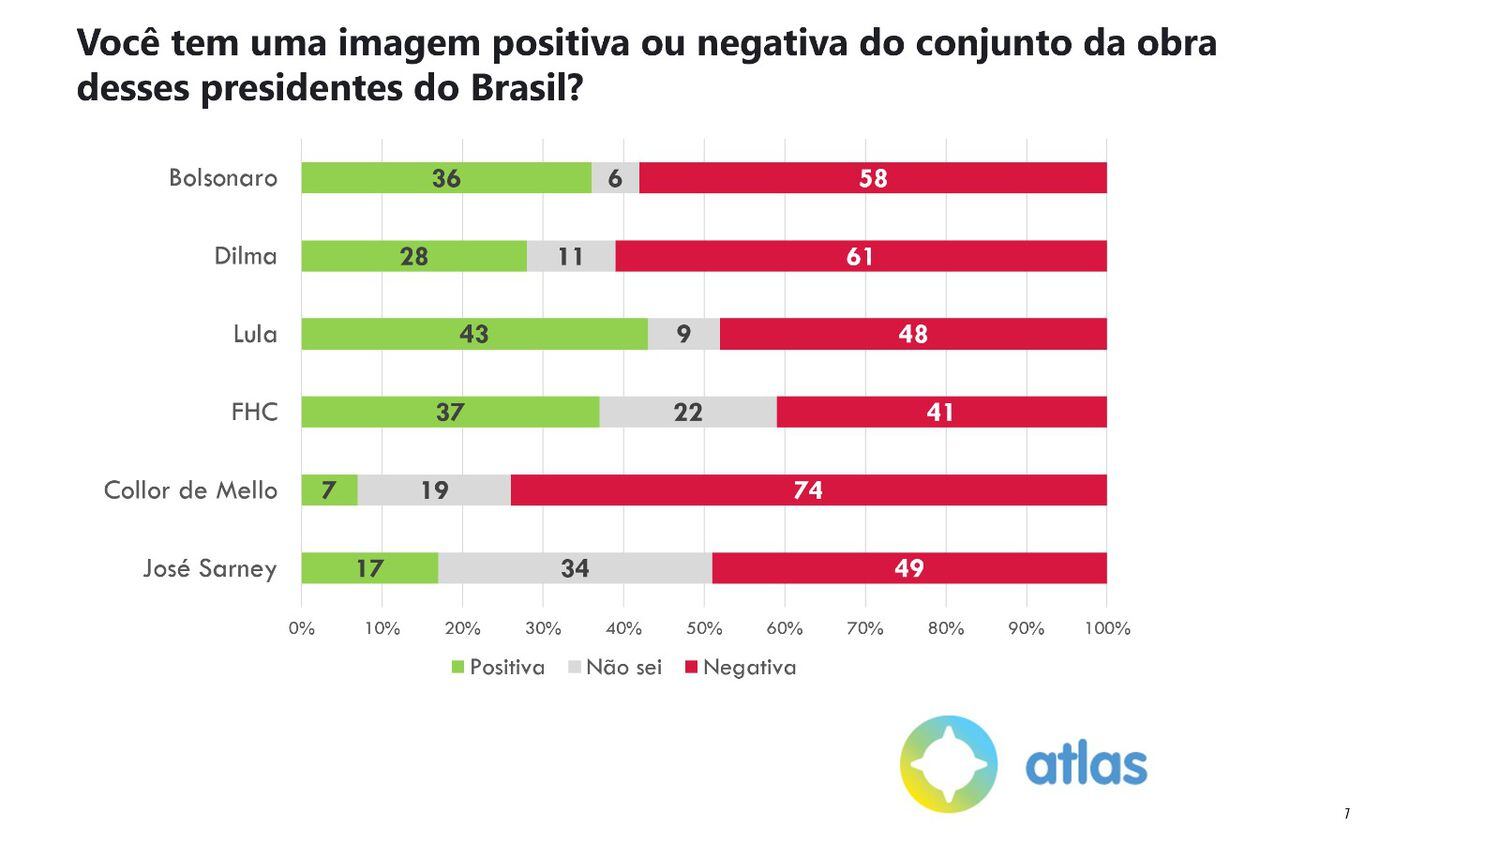 A crescente crise de imagem vivida por Bolsonaro dificultaria suas intenções à reeleição se qualquer possível nome da disputa em 2022